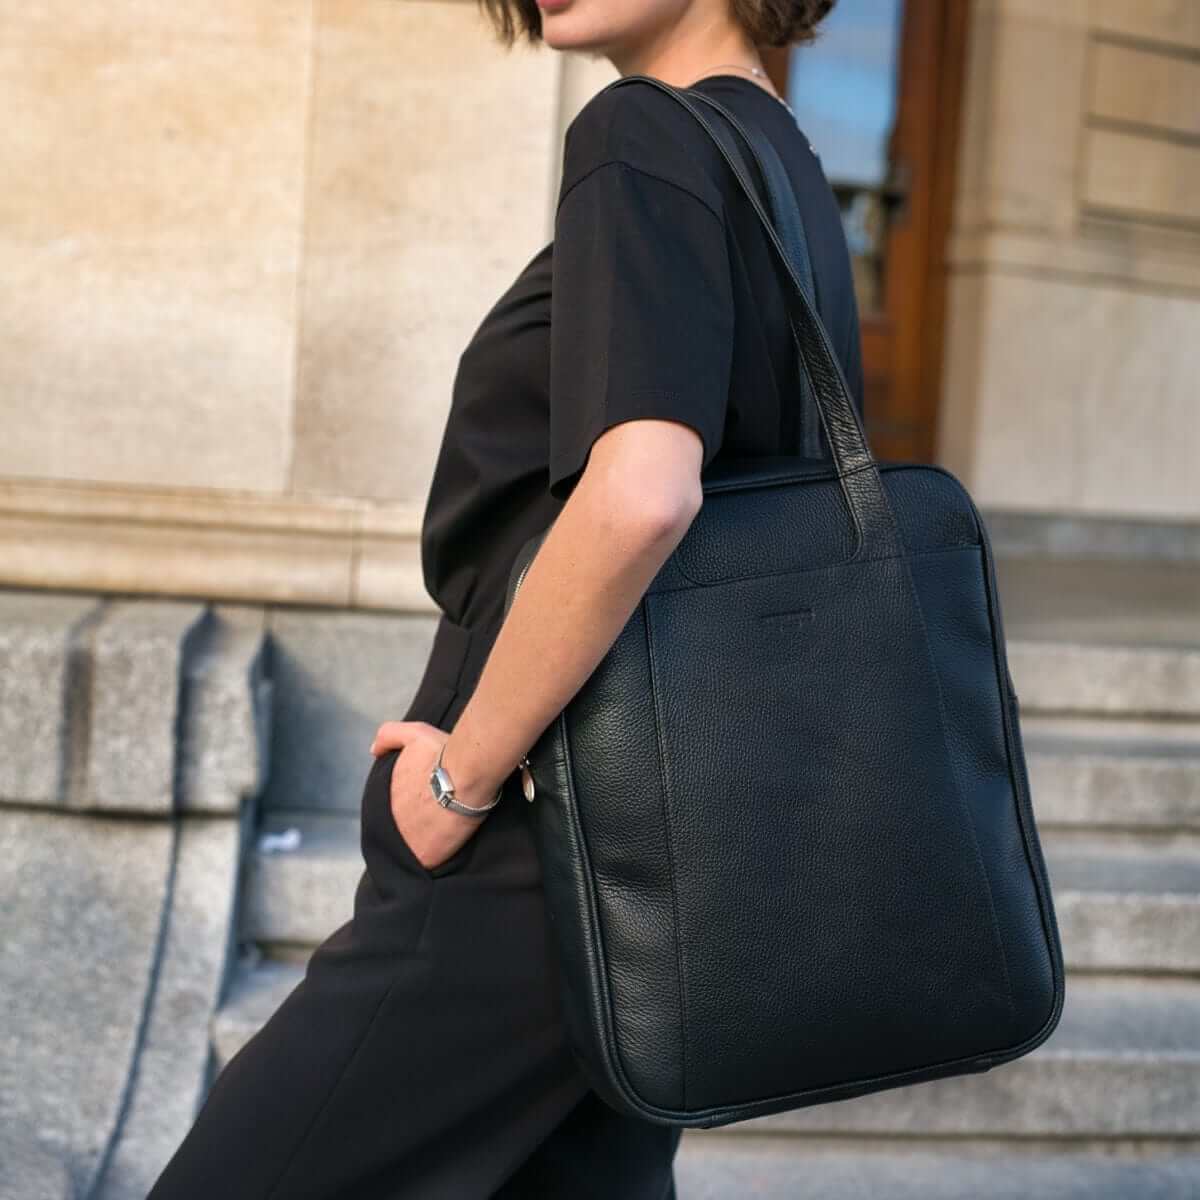 Black Leather Bag With Shoulder Strap